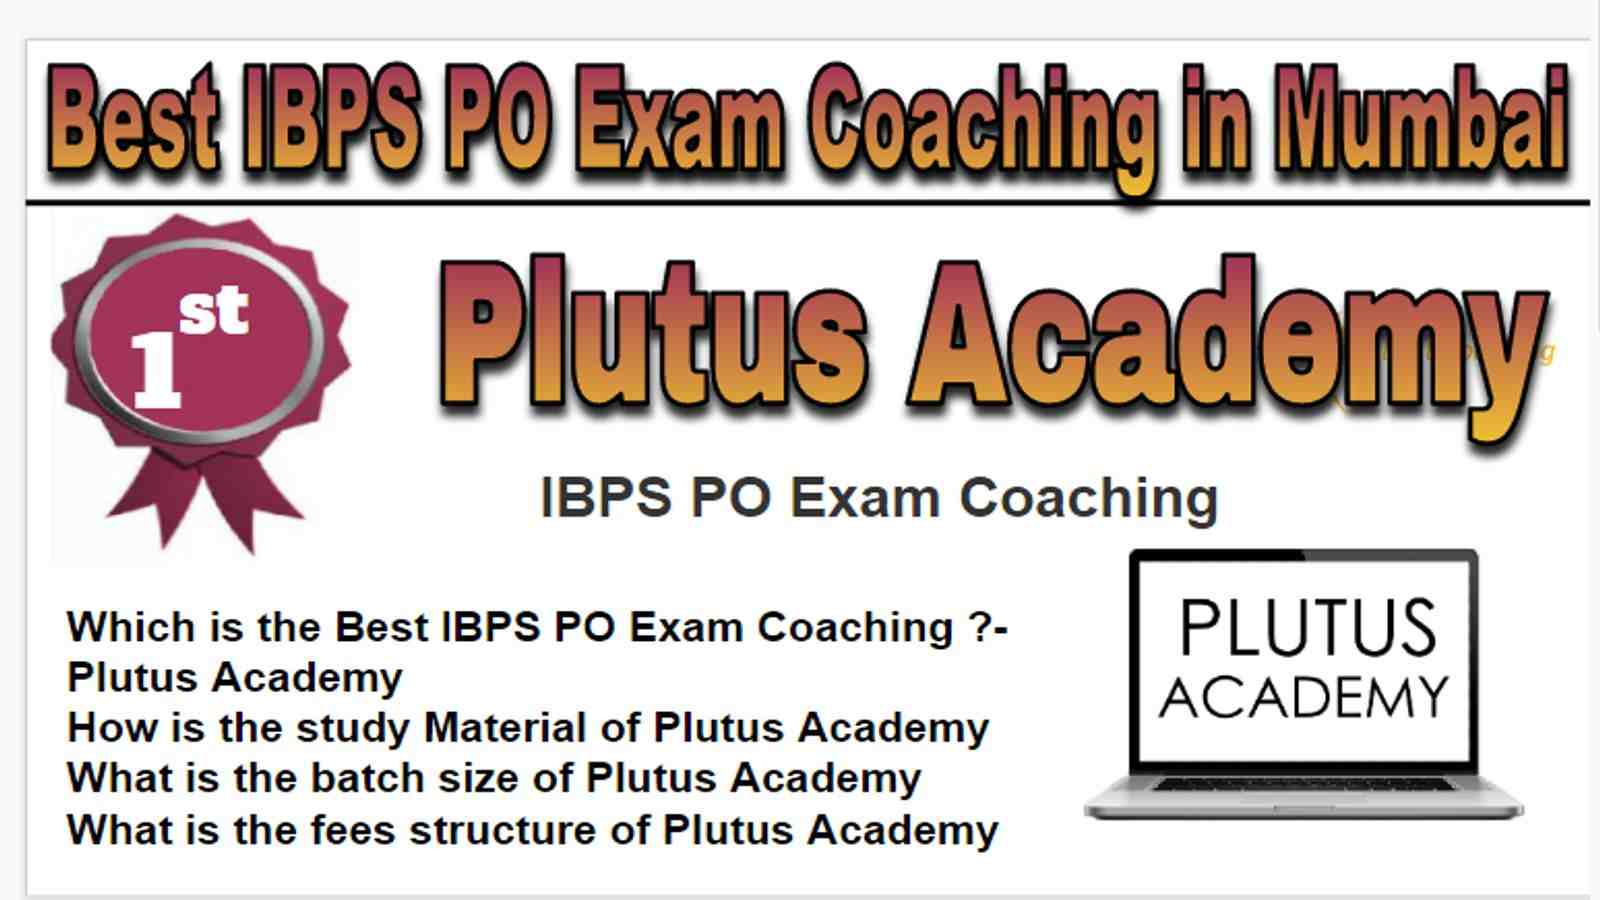 Rank 1 Best IBPS PO Exam Coaching in Mumbai